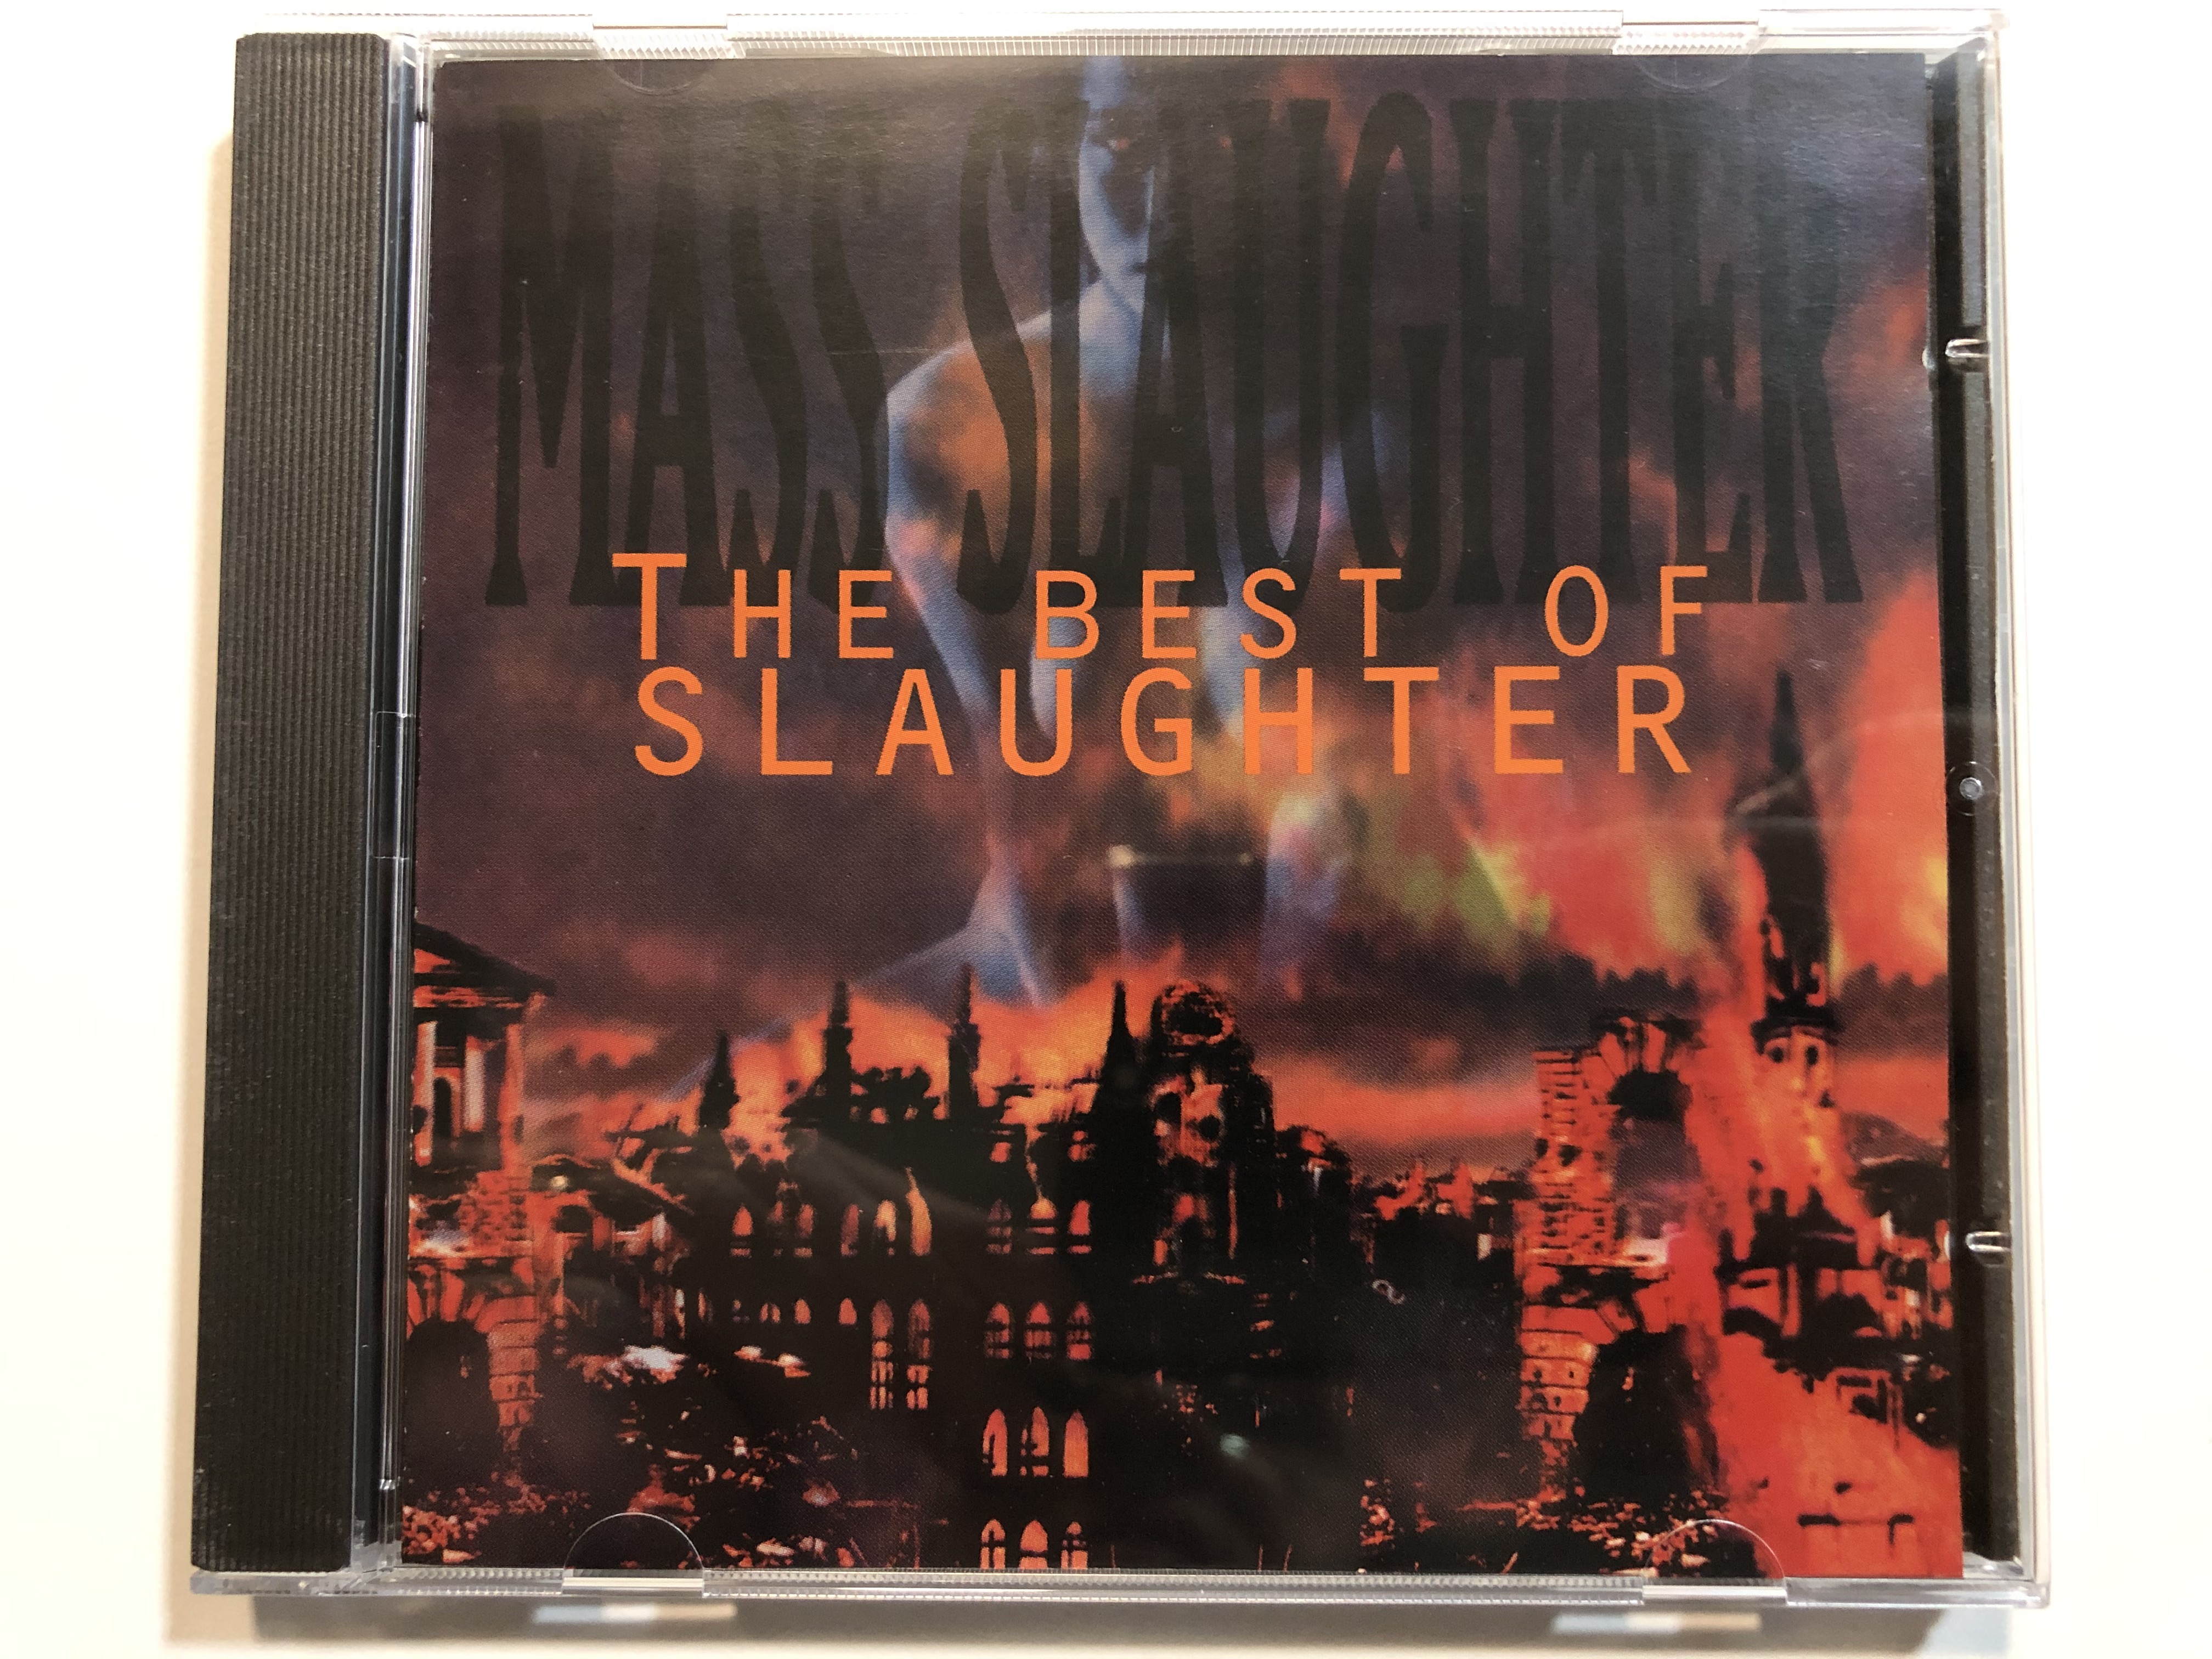 mass-slaughter-the-best-of-slaughter-chrysalis-audio-cd-1995-724383269624-1-.jpg